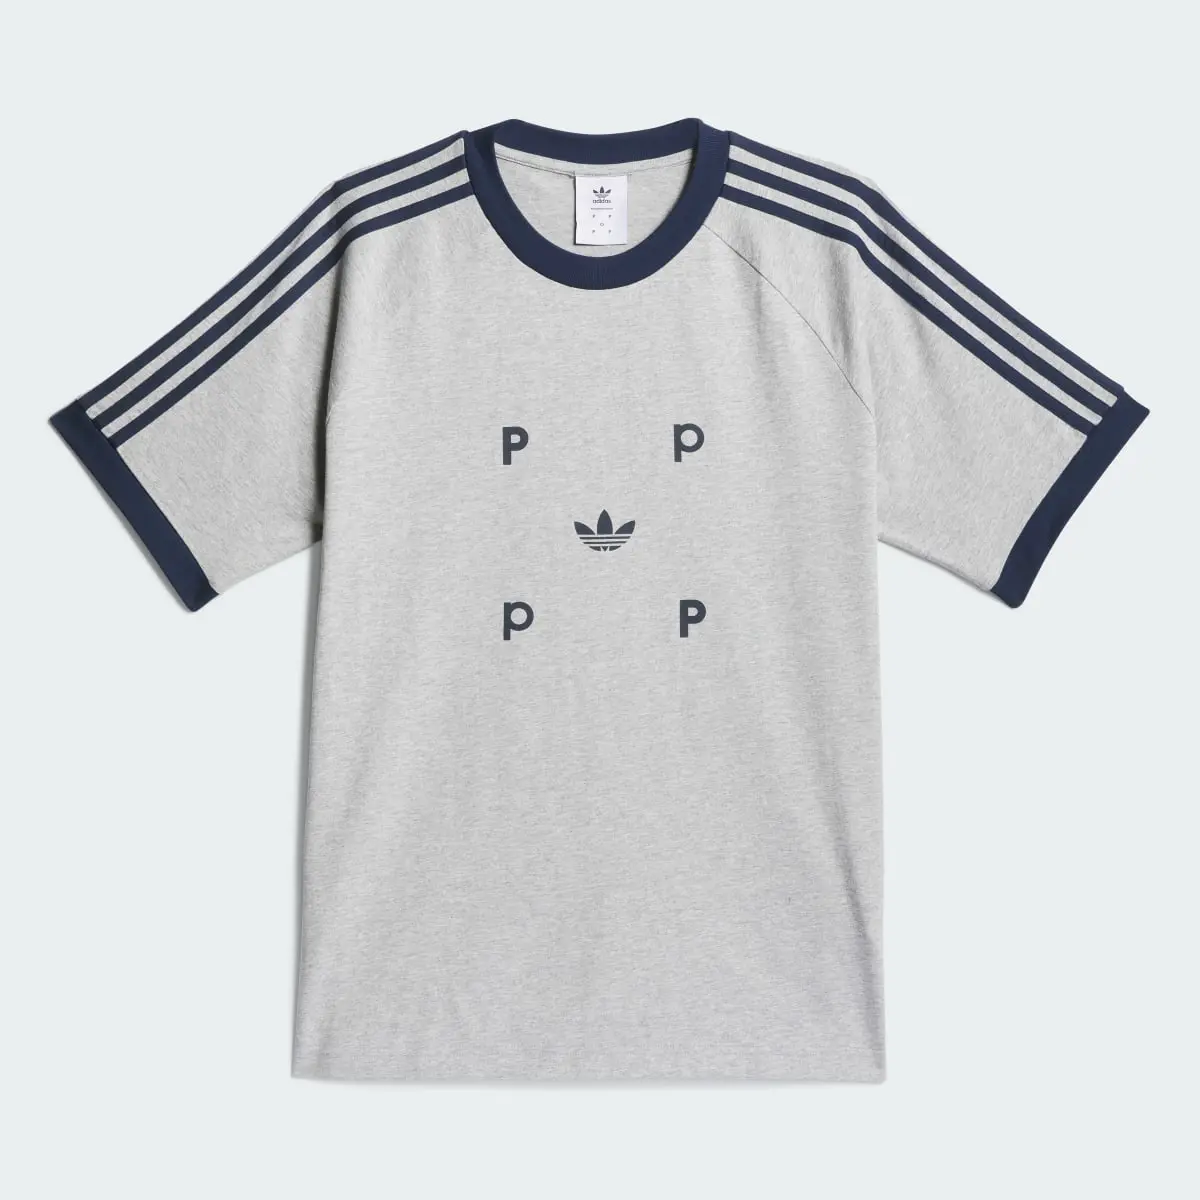 Adidas T-shirt classique Pop. 2